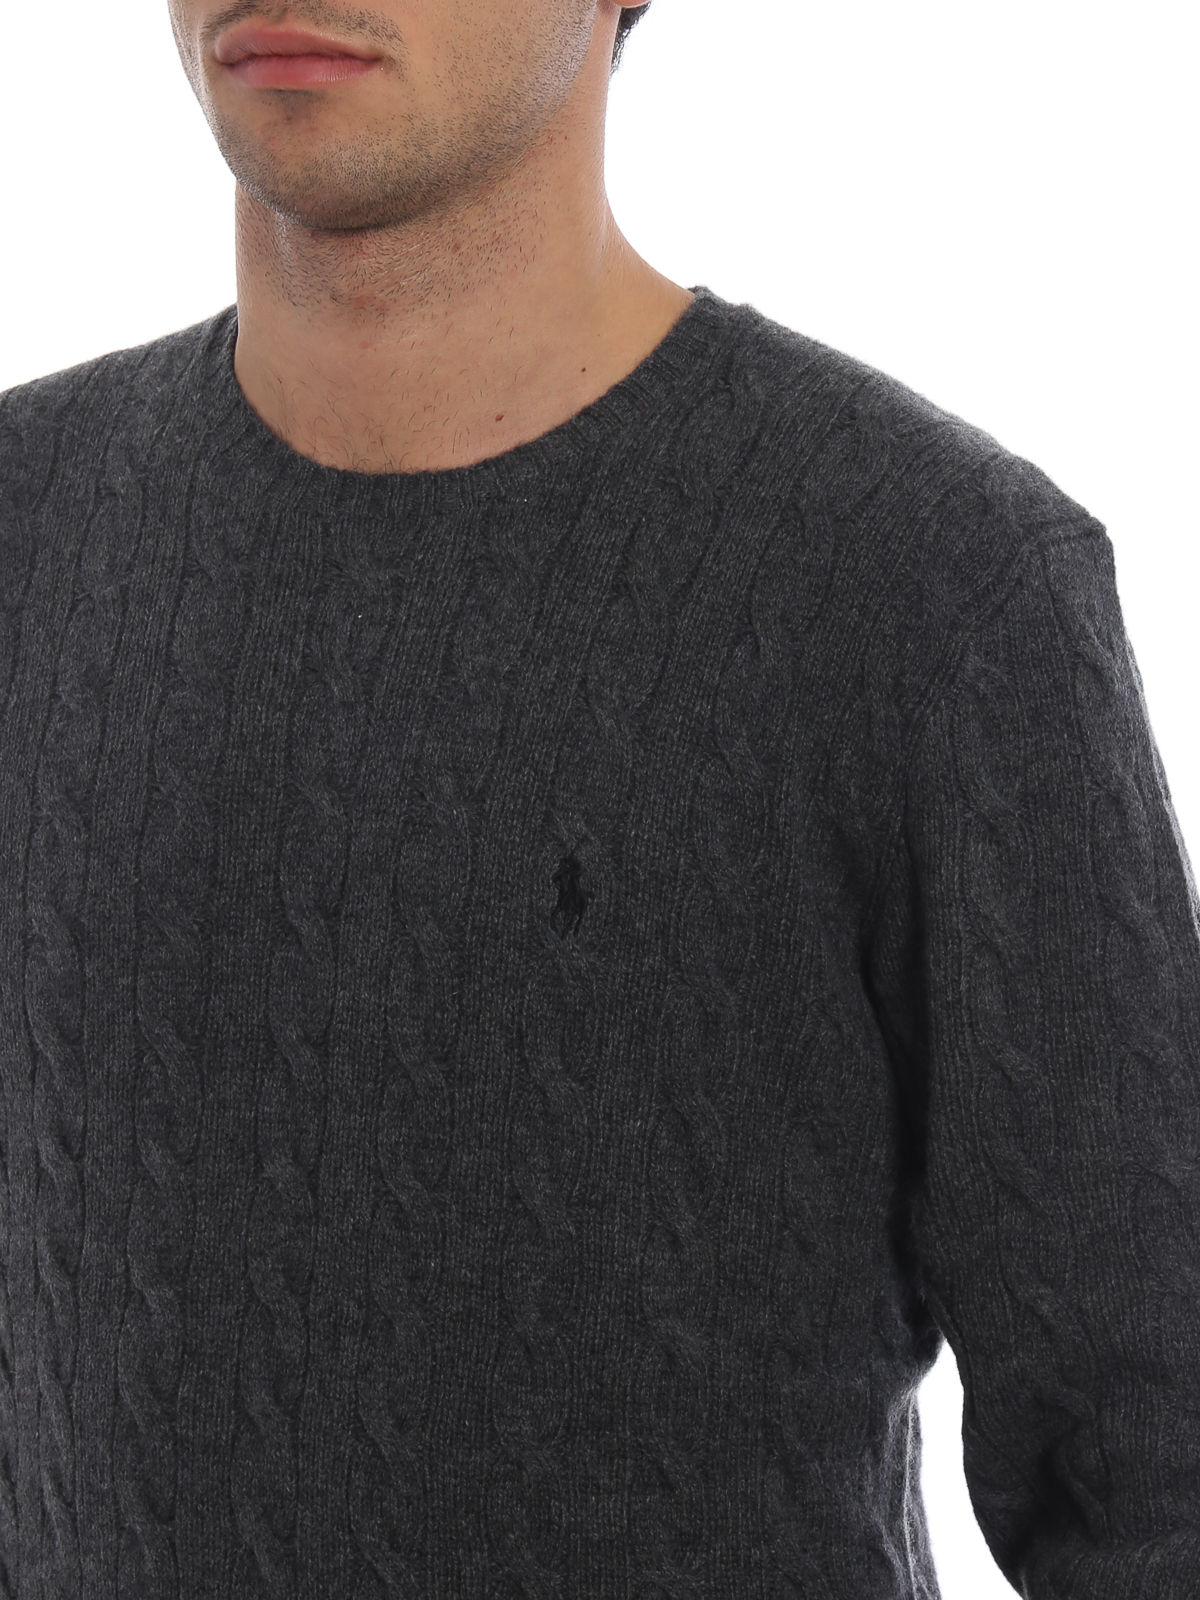 ralph lauren knitted sweater